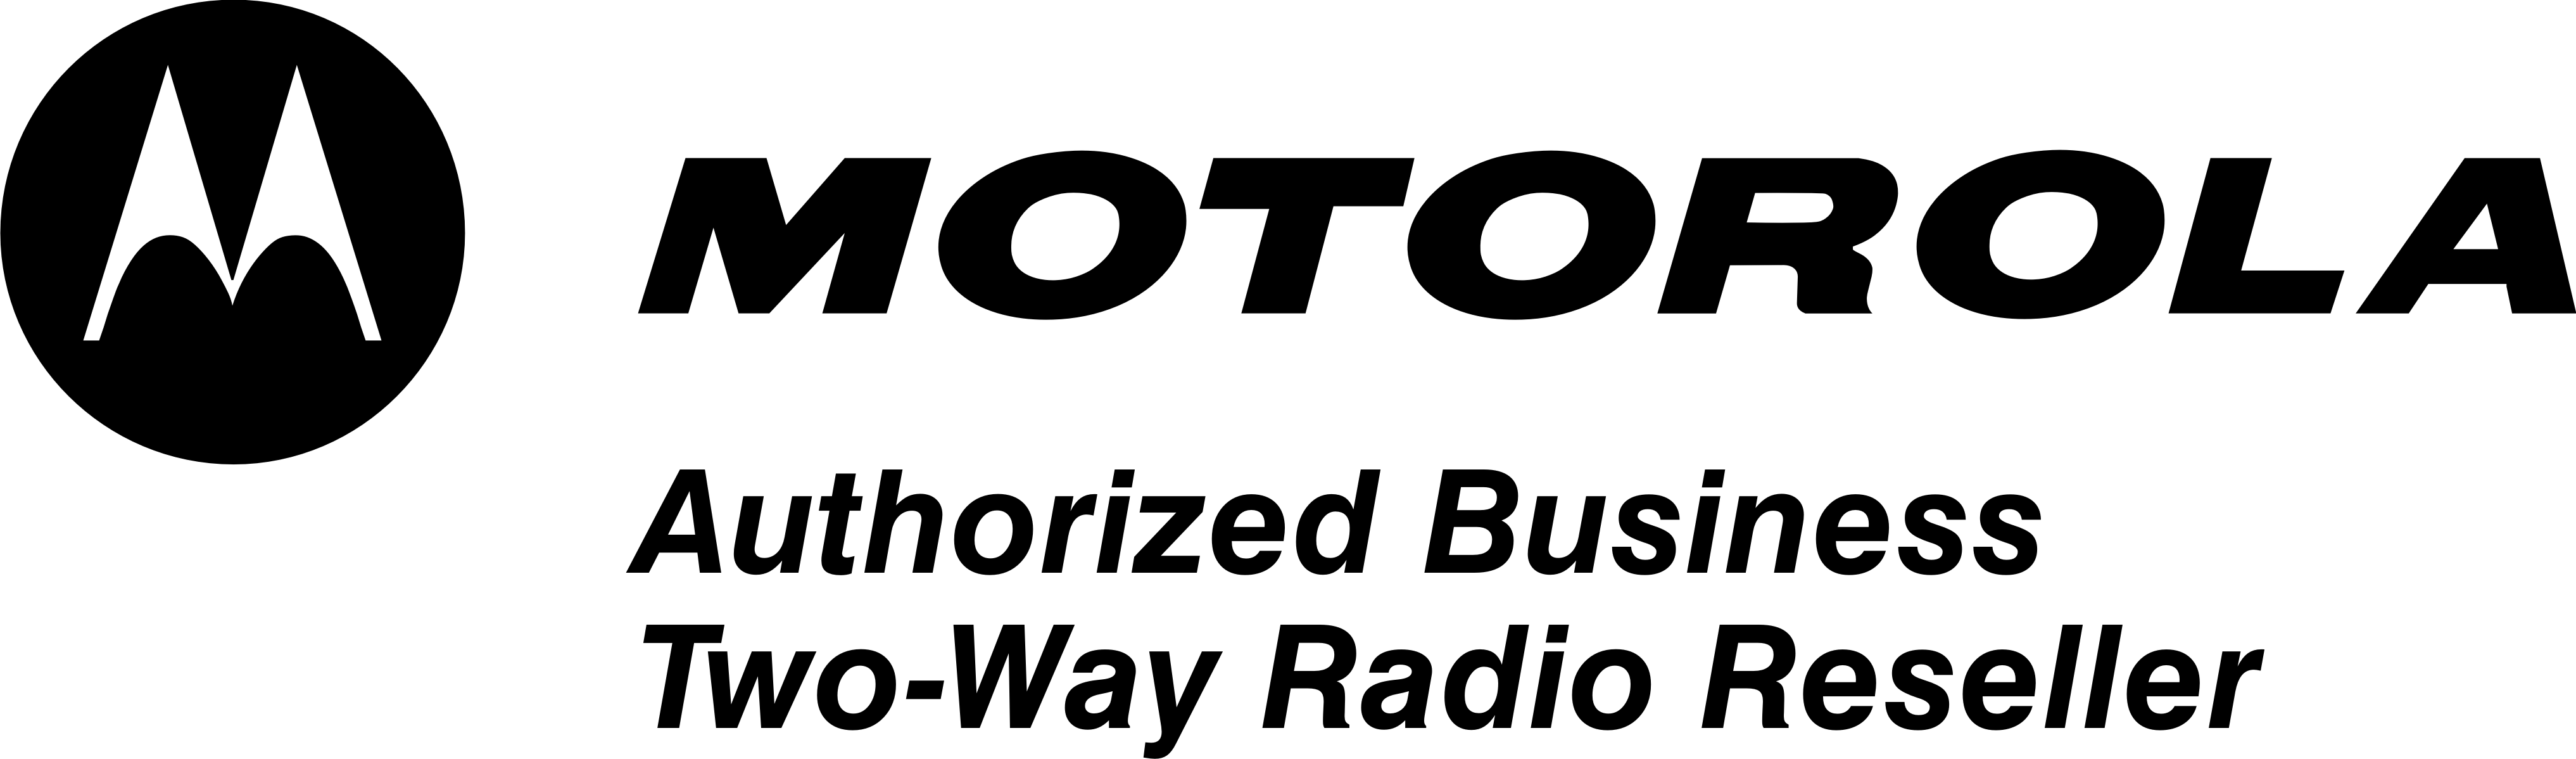 Motorola Radio Logo - Image Downloads: Logos | MEI Corp.